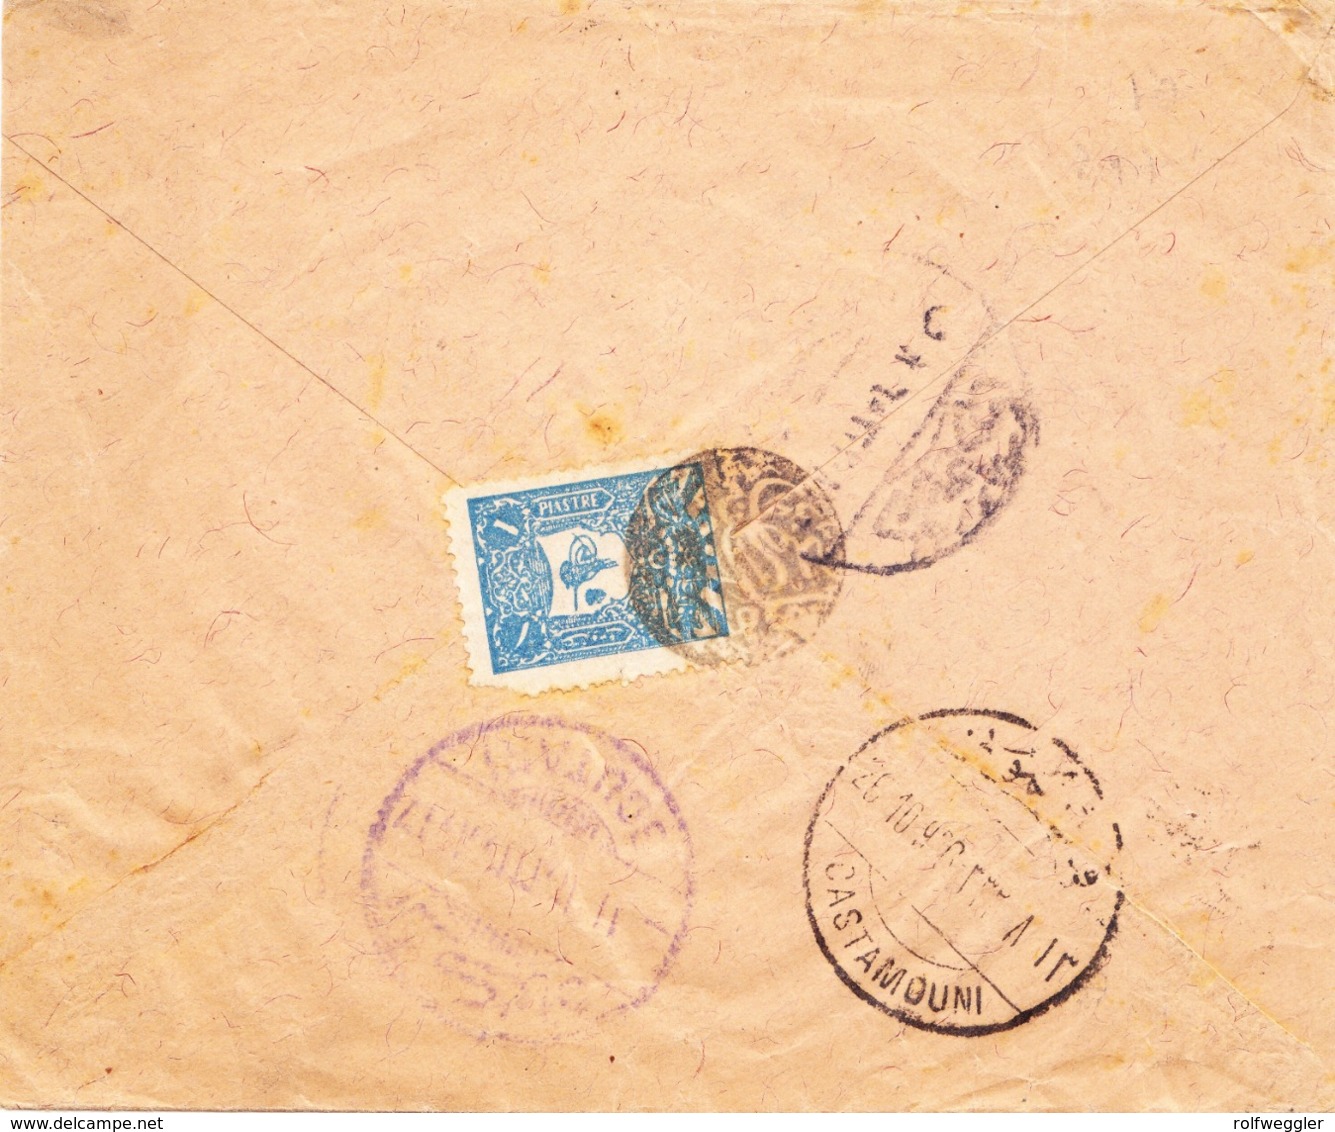 1906 Brief Aus Kargi Nach Constantinople, Frankiert Mit 1 Piaster Marke (Eckmangel), Negativ Stempel: Kargi Posta Subesi - 1837-1914 Smyrne